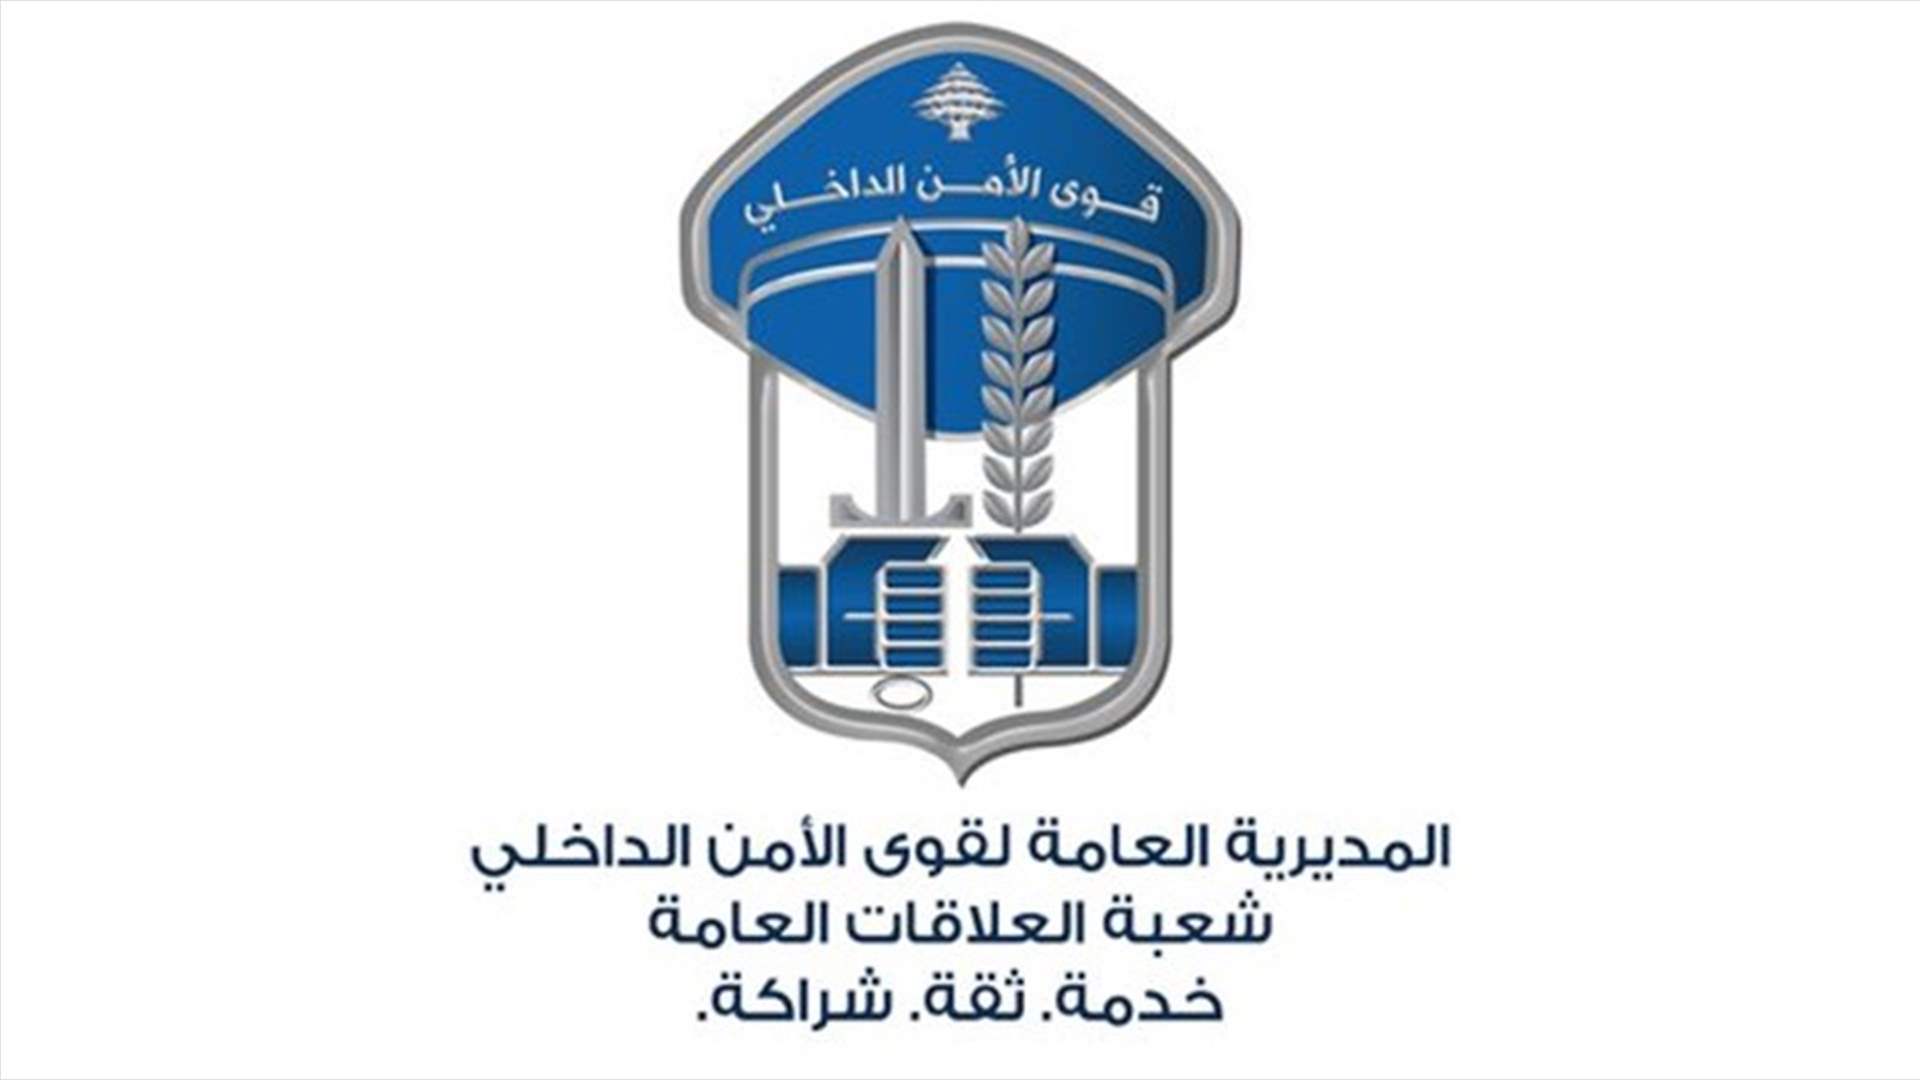 بعد فرار سجين من داخل مستشفى الحريري الحكومي..شعبة المعلومات توقفه مع أربعة متورّطين